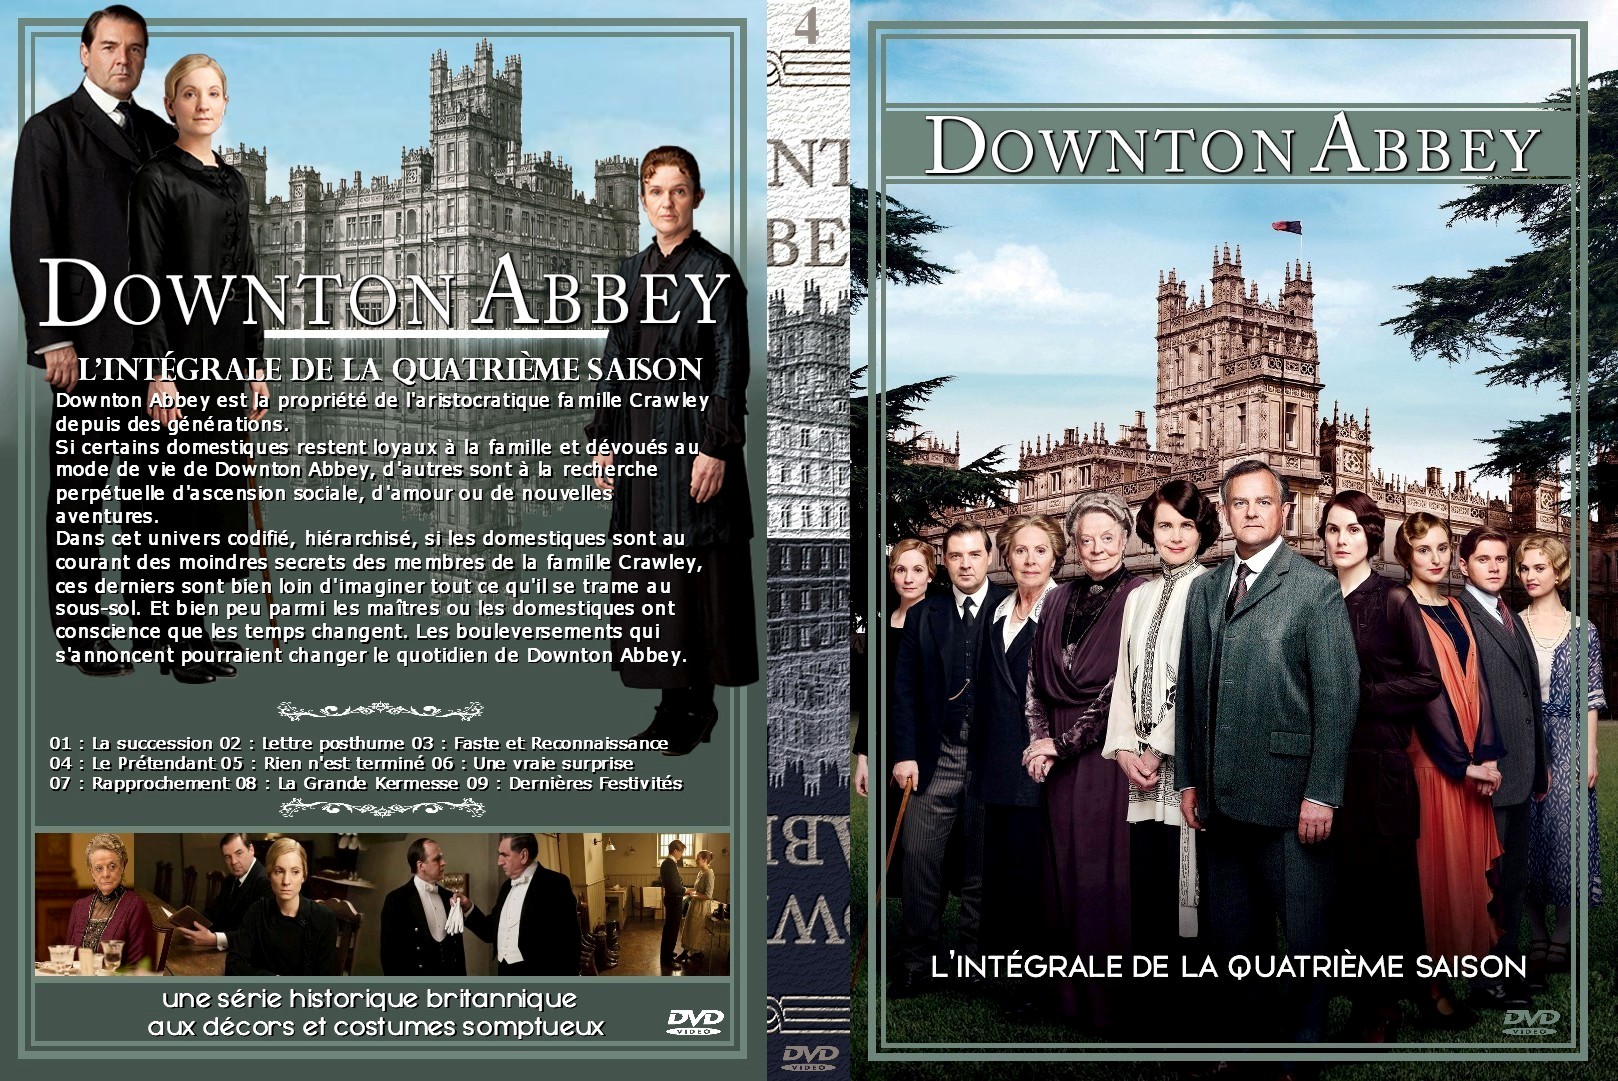 Jaquette DVD Downton Abbey Saison 4 custom